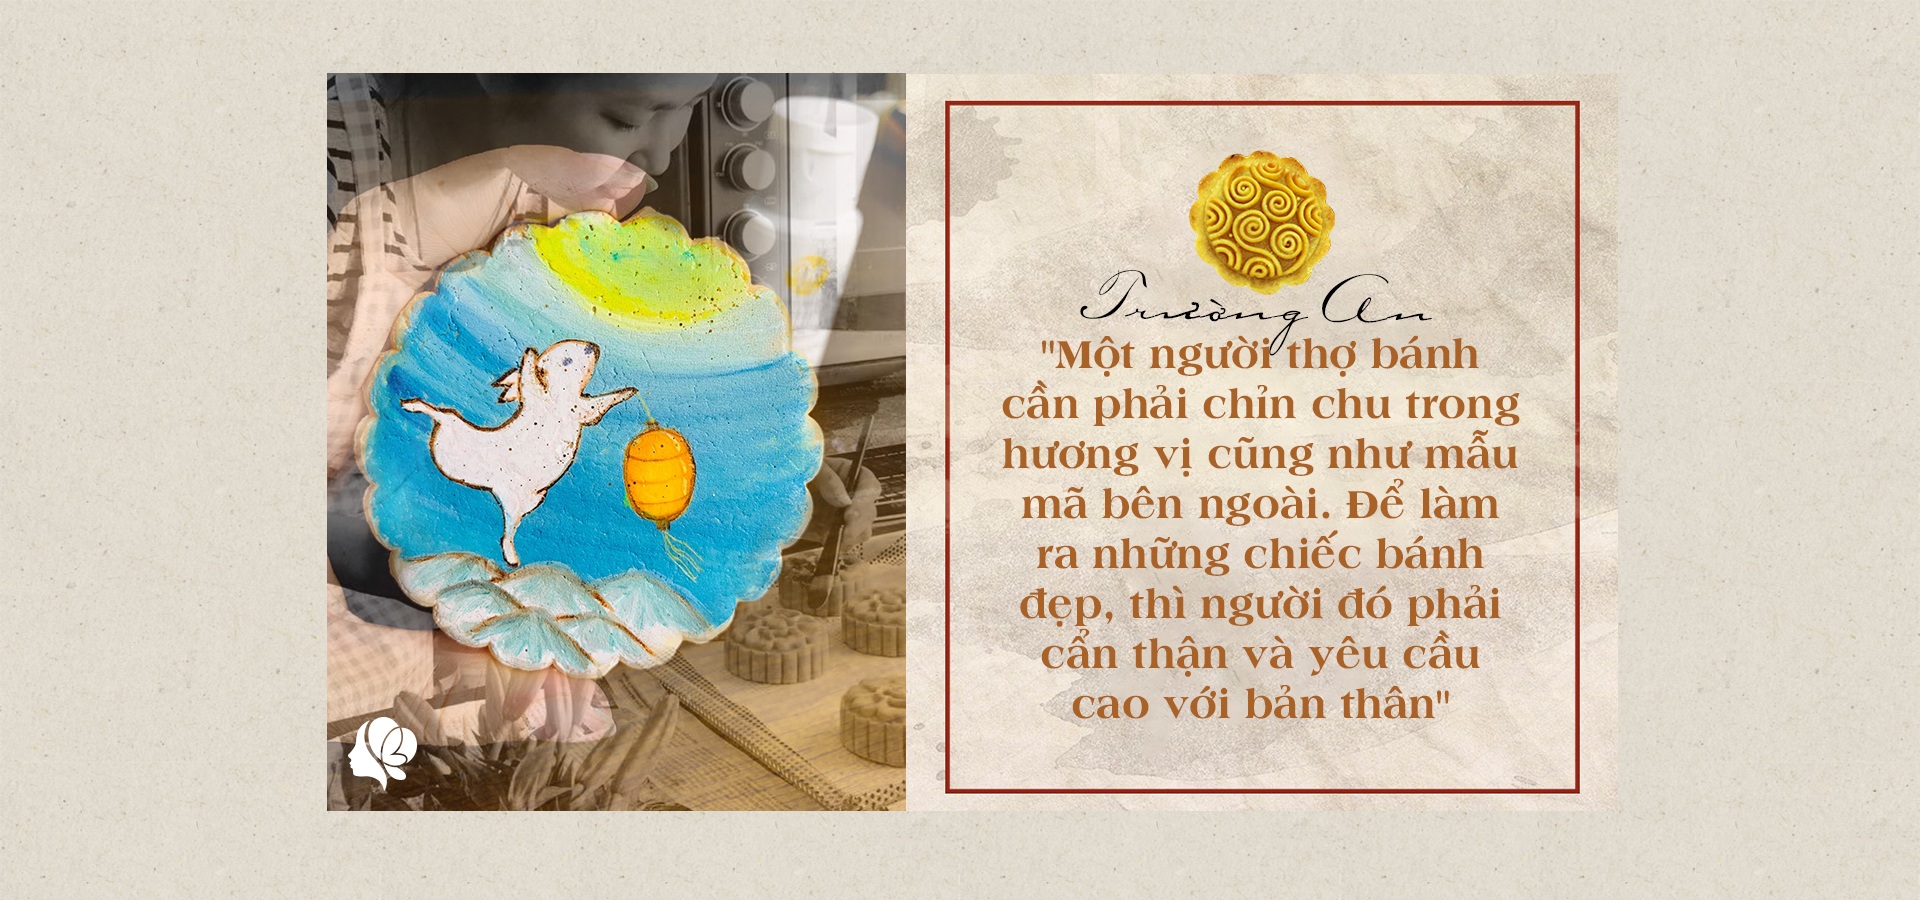 Bỏ việc ở nhà làm bánh, tạo ra bánh Trung thu vẽ tay, 8X Sài Gòn kiếm 60 triệu/tháng - 15